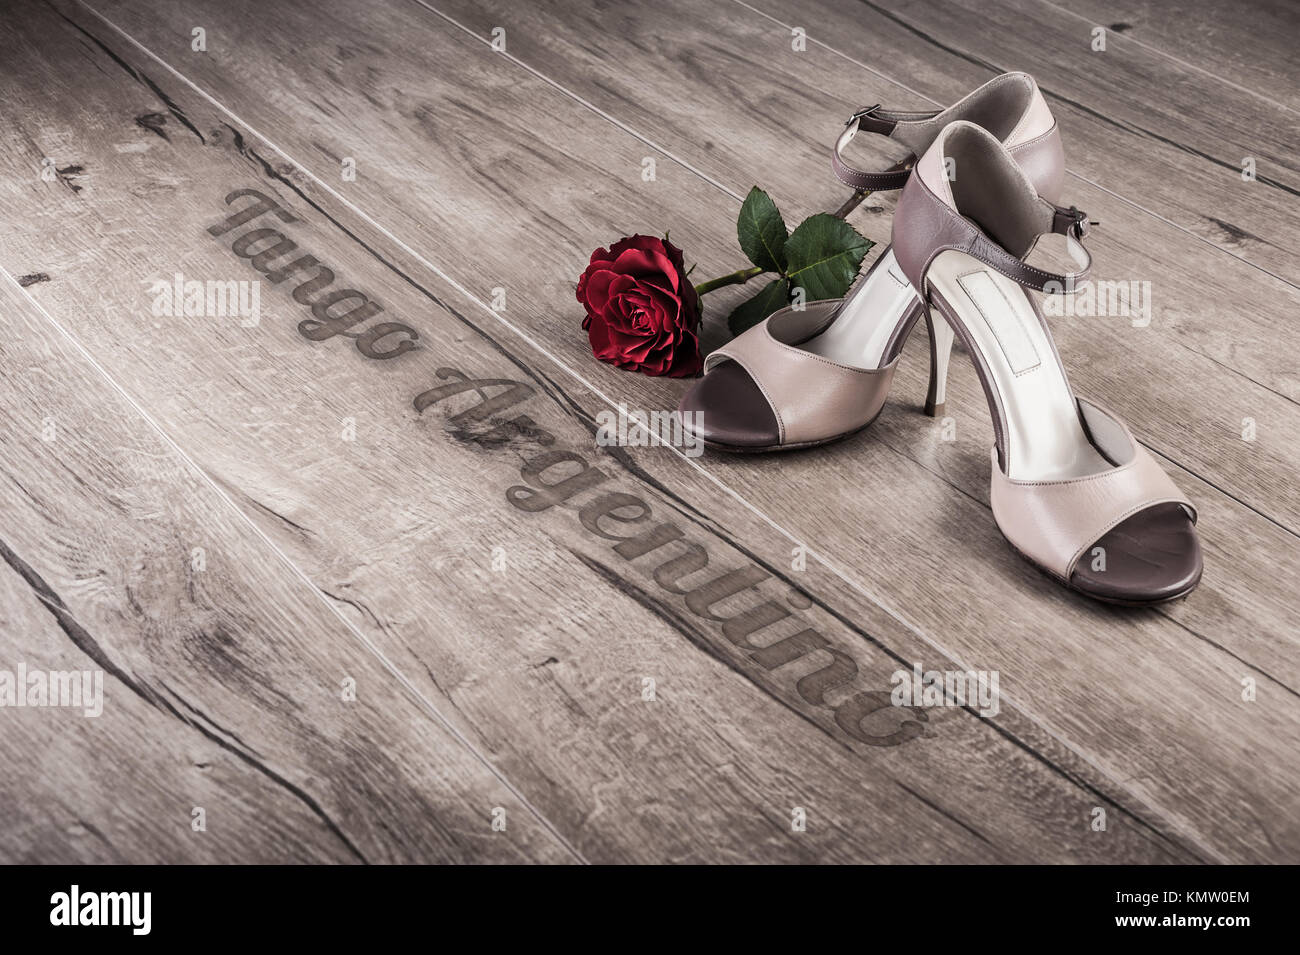 Schoes tango argentin et une rose sur un plancher en bois, légende "Tango Argentino" Banque D'Images